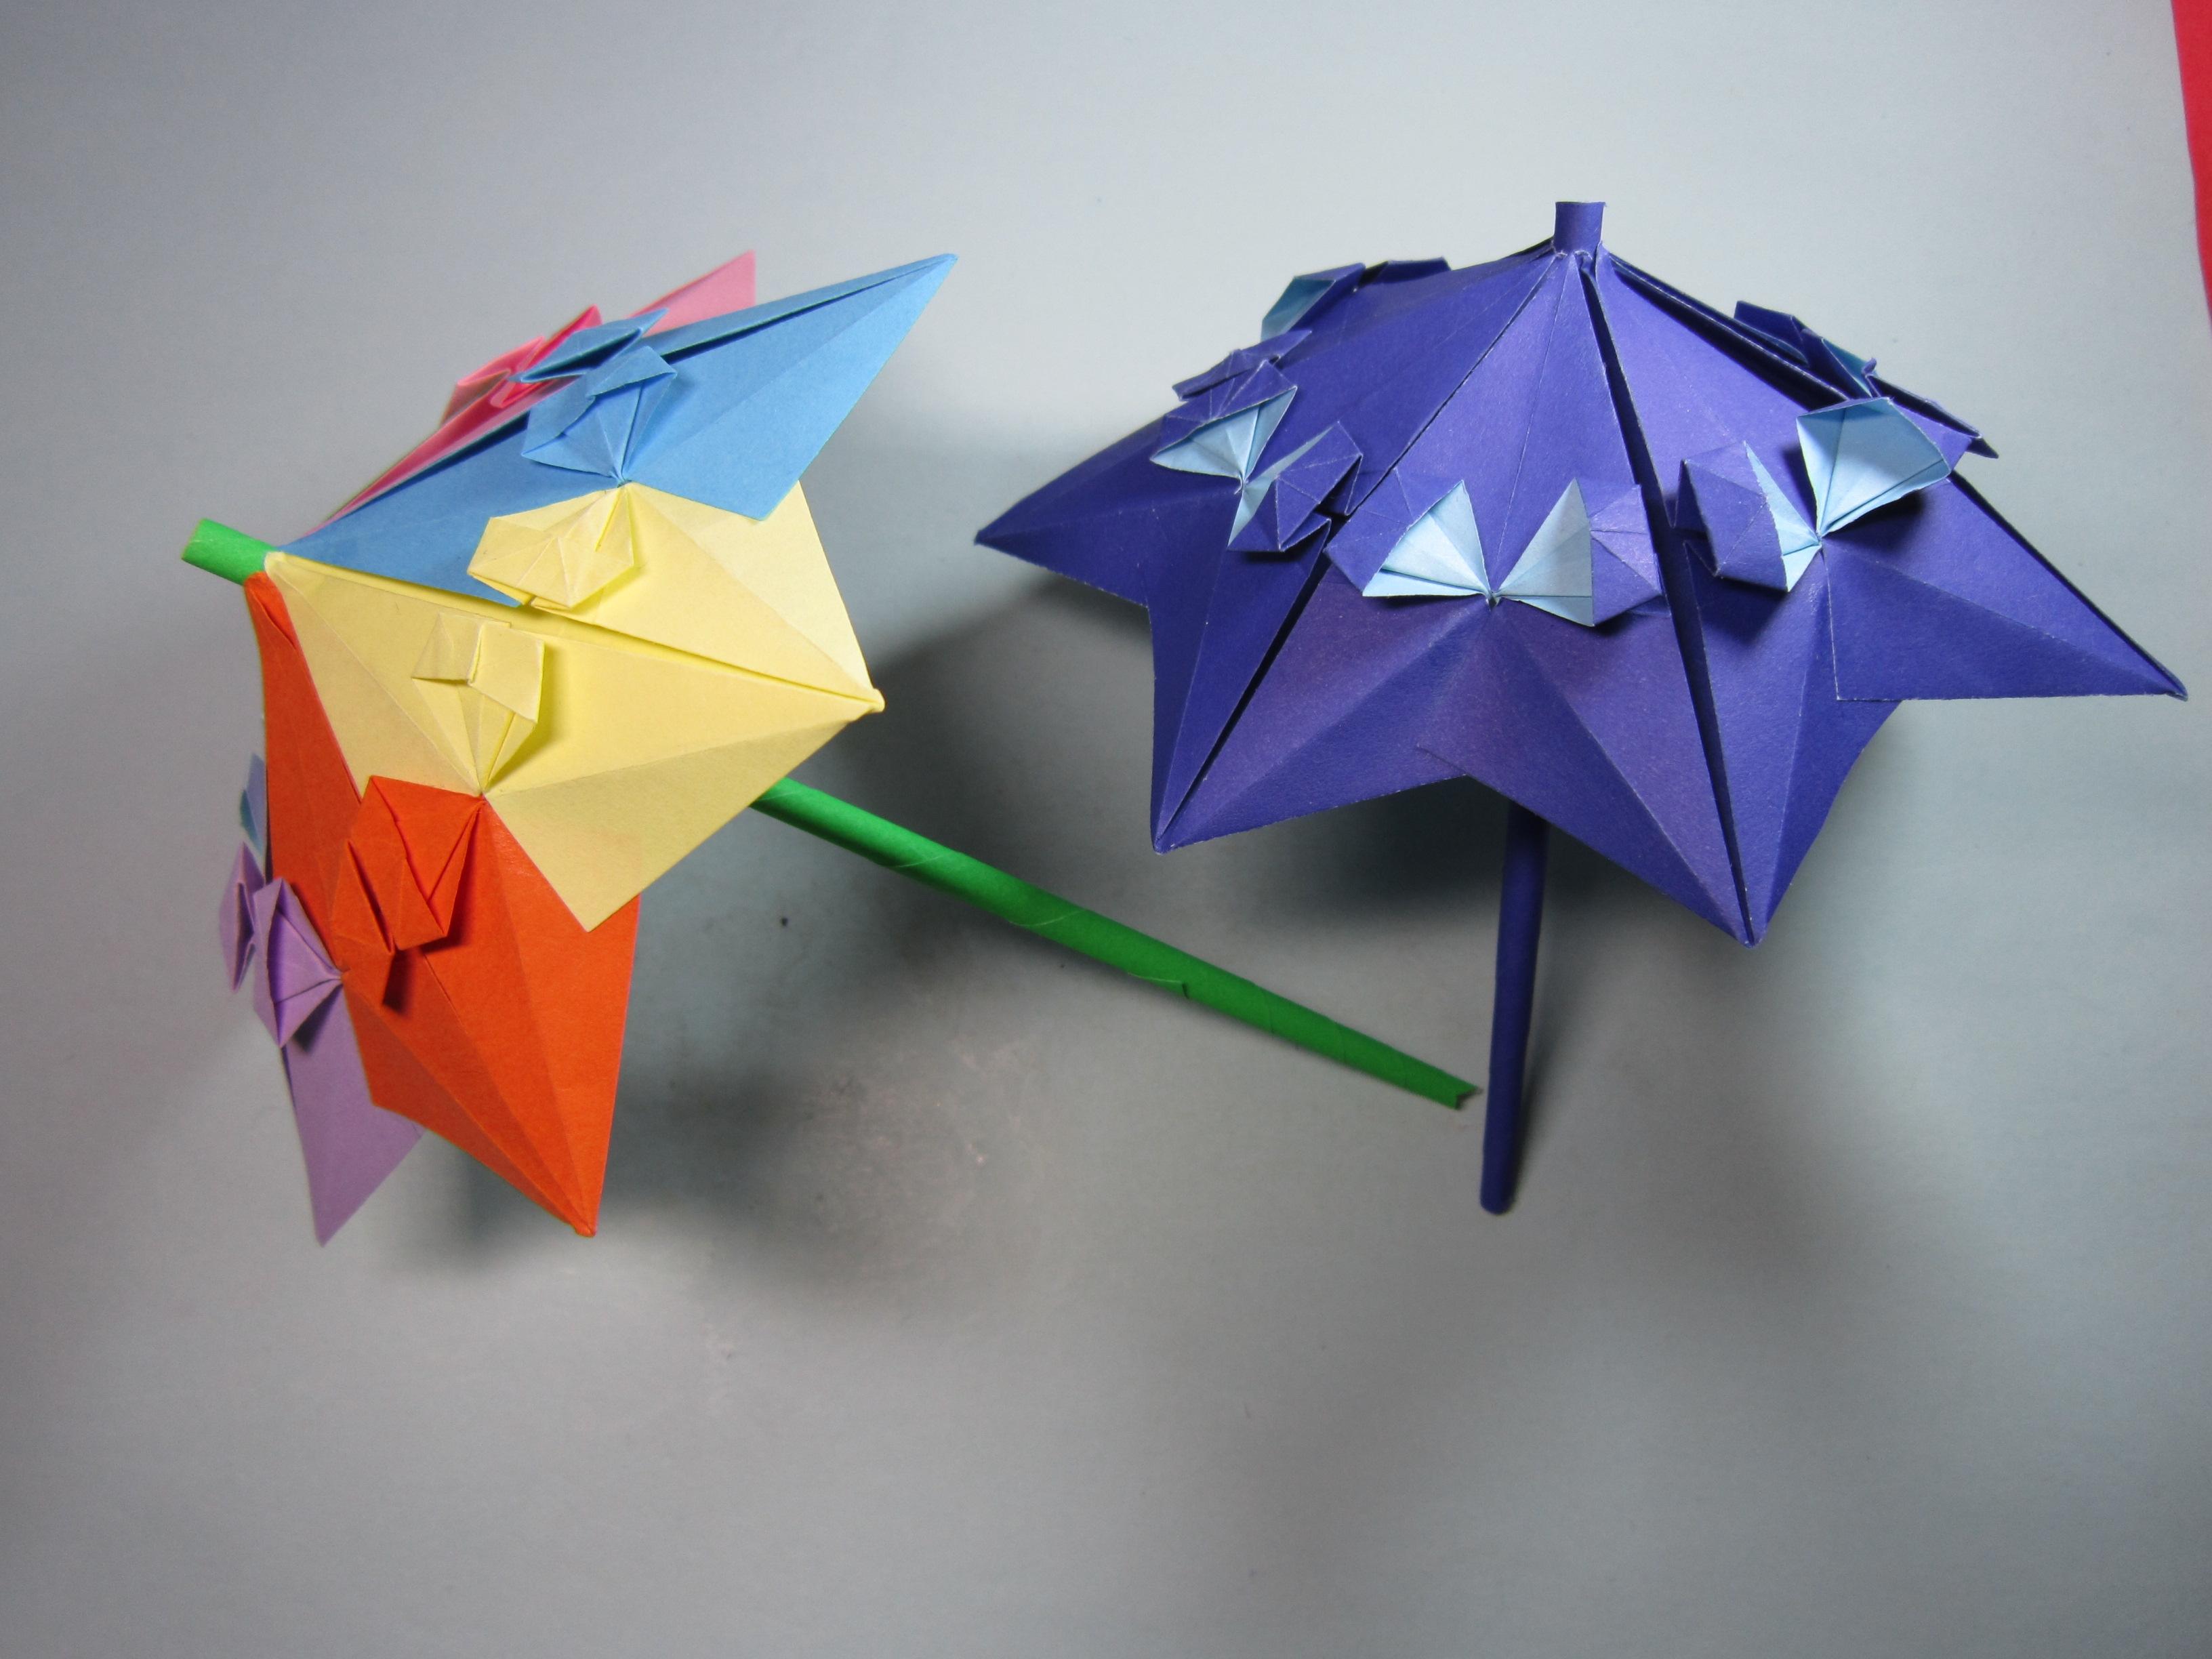 漂亮的 雨伞折法原来这么简单,几分钟就能学会折纸伞